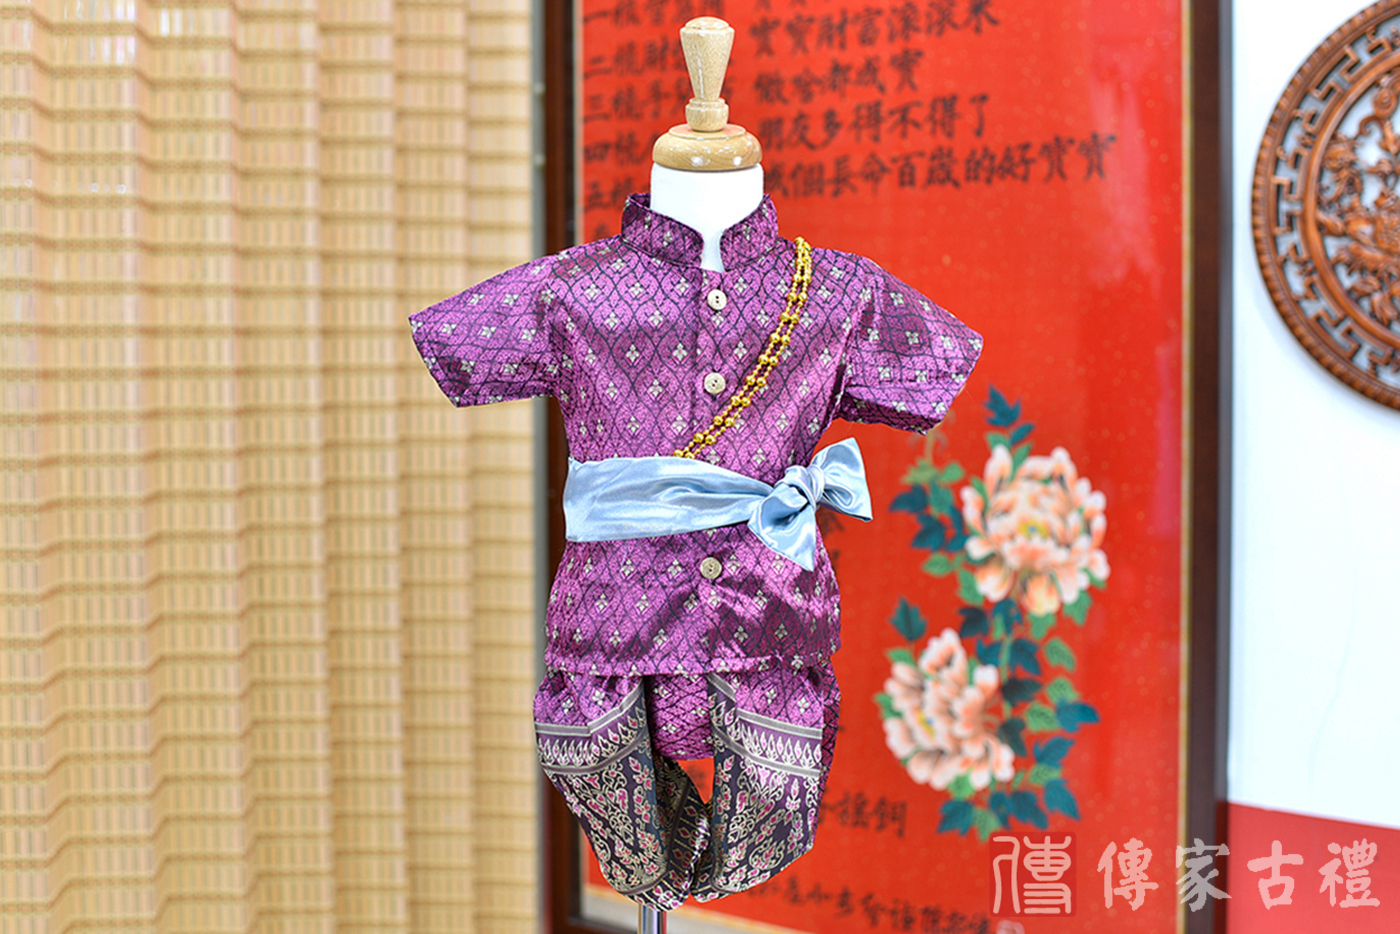 2024-02-25小孩皇室泰服古裝禮服。紫羅蘭色織紋絲綢的上衣搭配精緻花紋的紫色褲裝的泰式古裝禮服。照片集